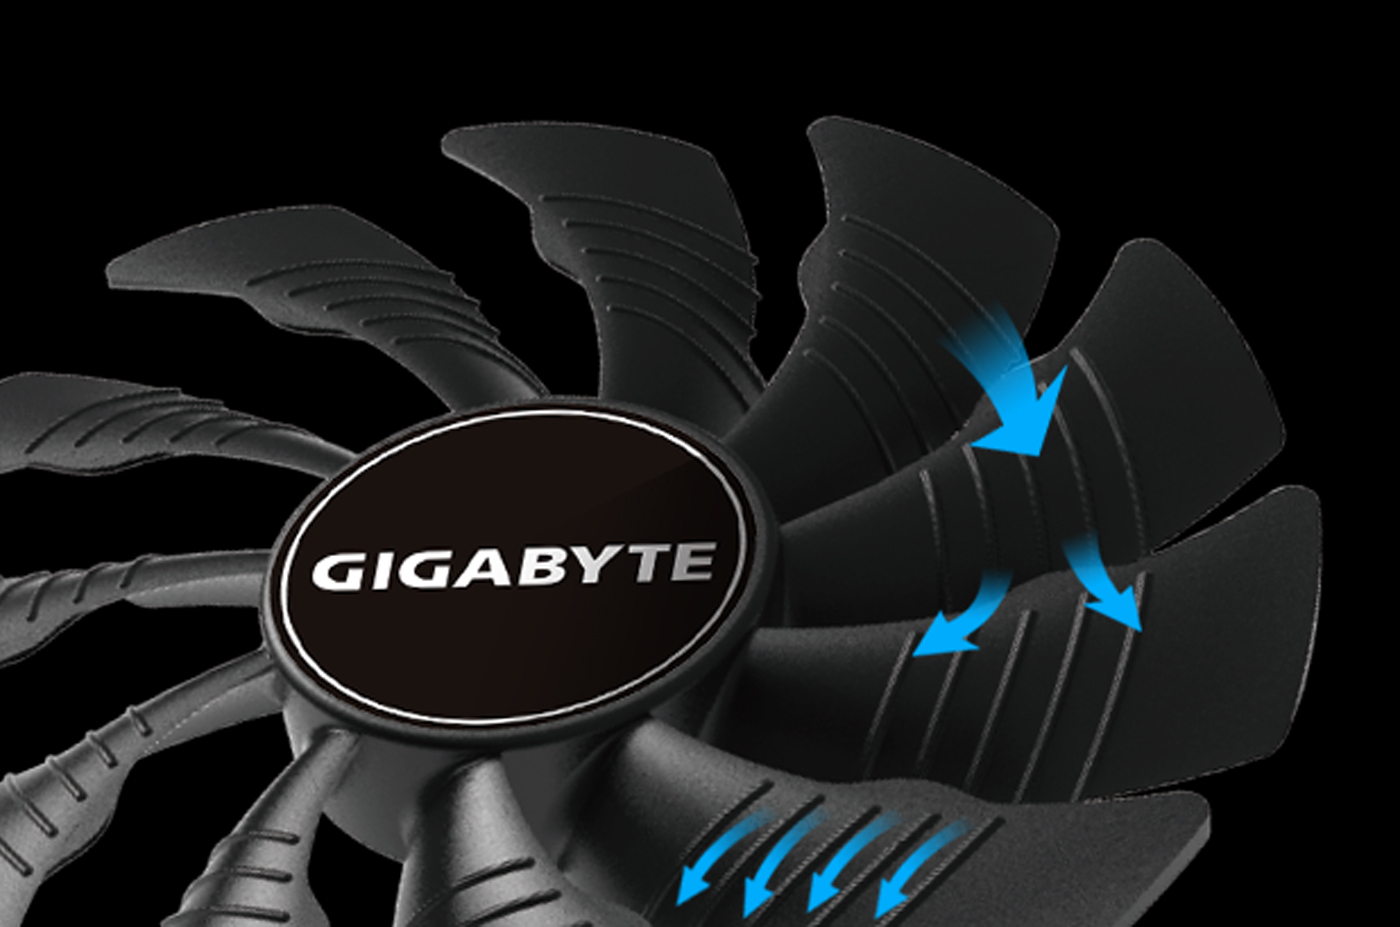 VGA Gigabyte RTX 2060 6GB 0C 2Fan (6GB GDDR6, 192-bit, DVI+HDMI+DP, 1x8-pin) cánh quạt